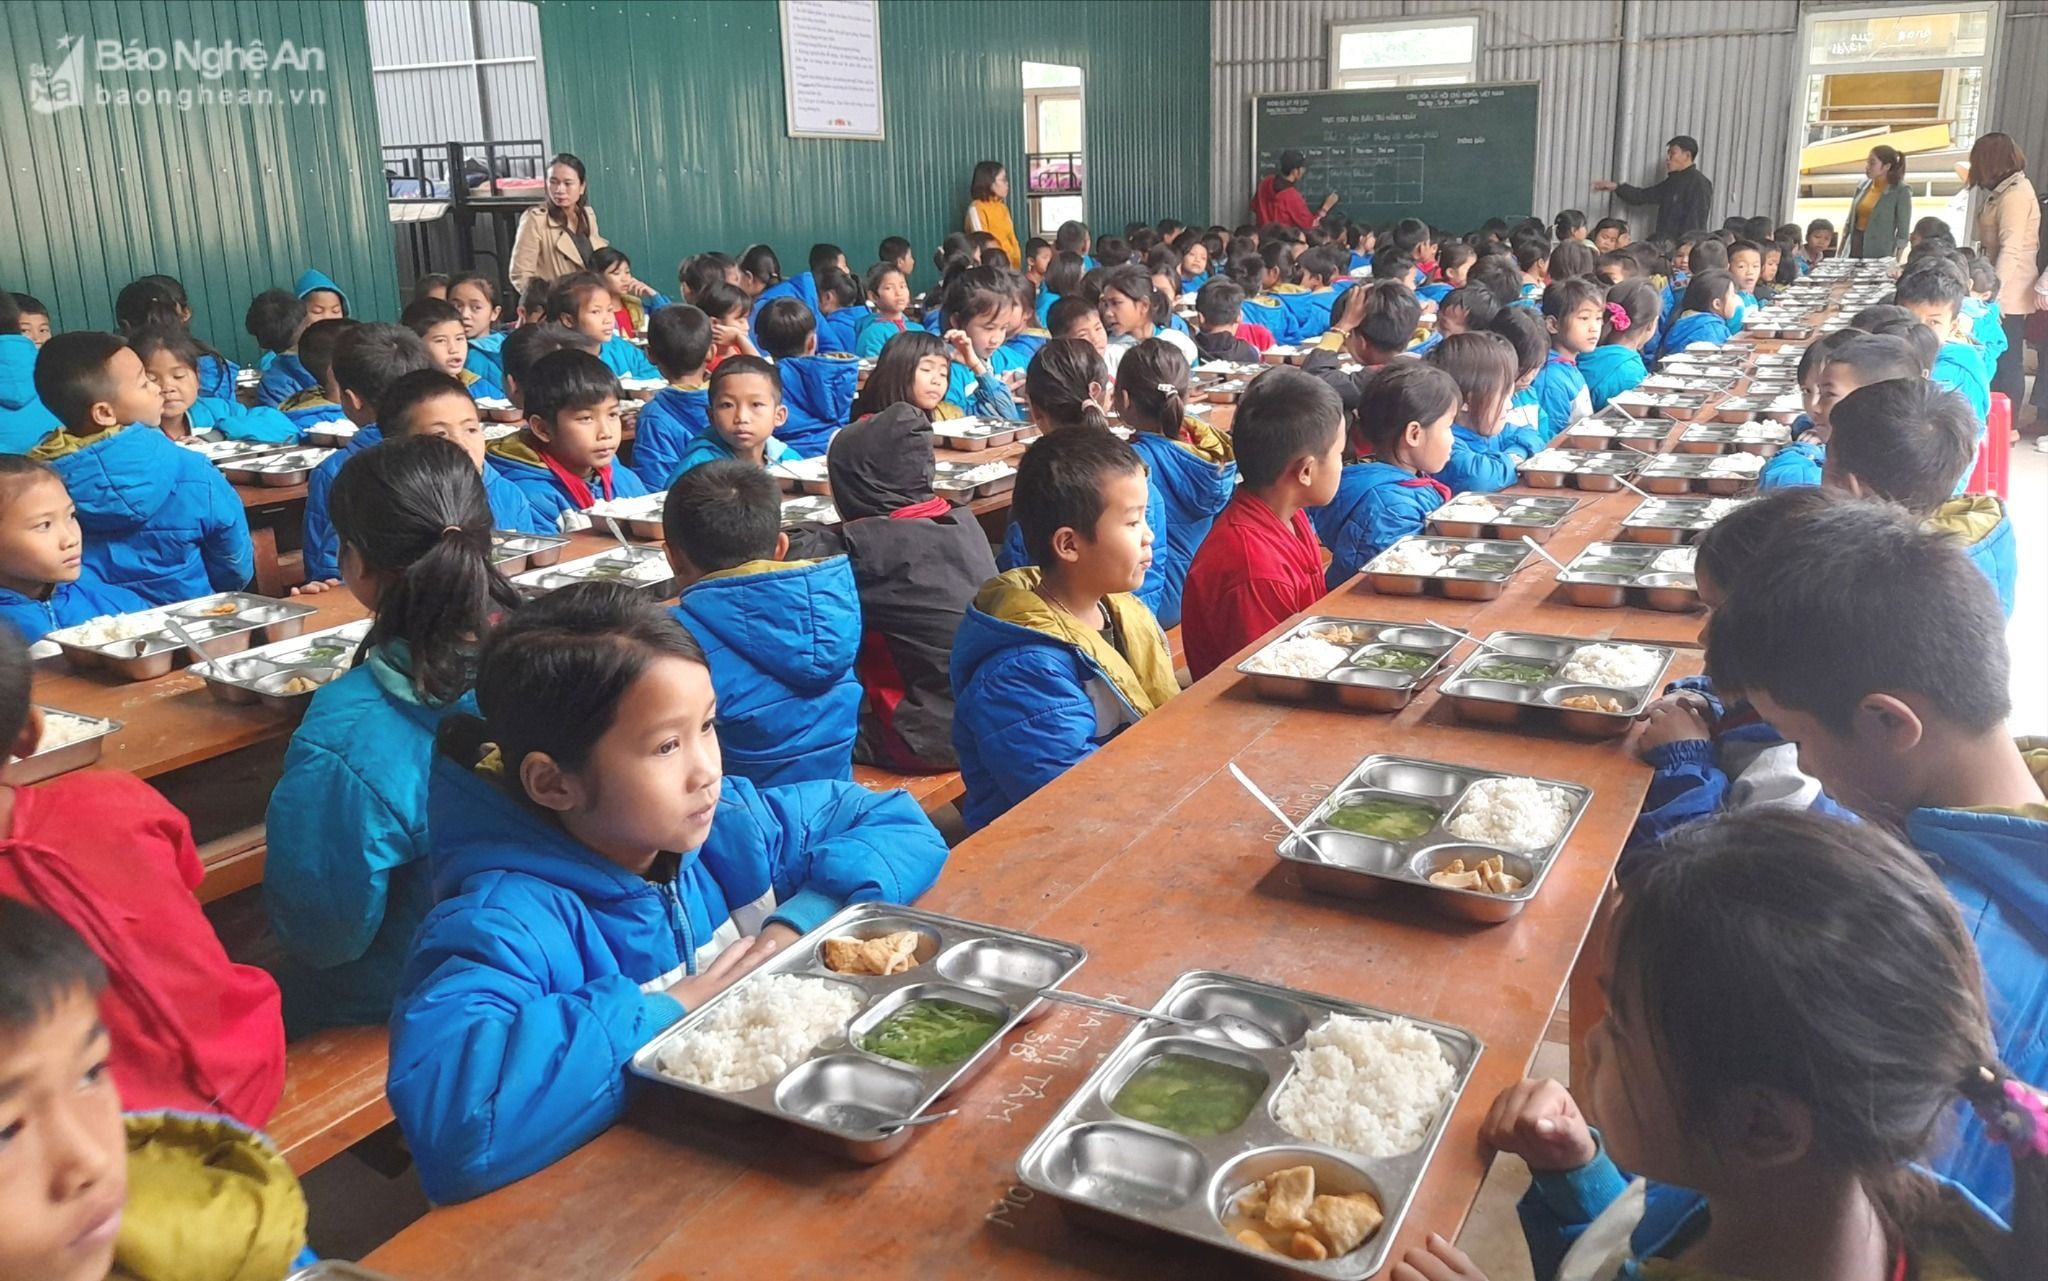 Hơn 8000 học sinh ở các huyện vùng cao Nghệ An được nhận hỗ trợ các suất ăn từ Dự án Nuôi em Nghệ An.jpg